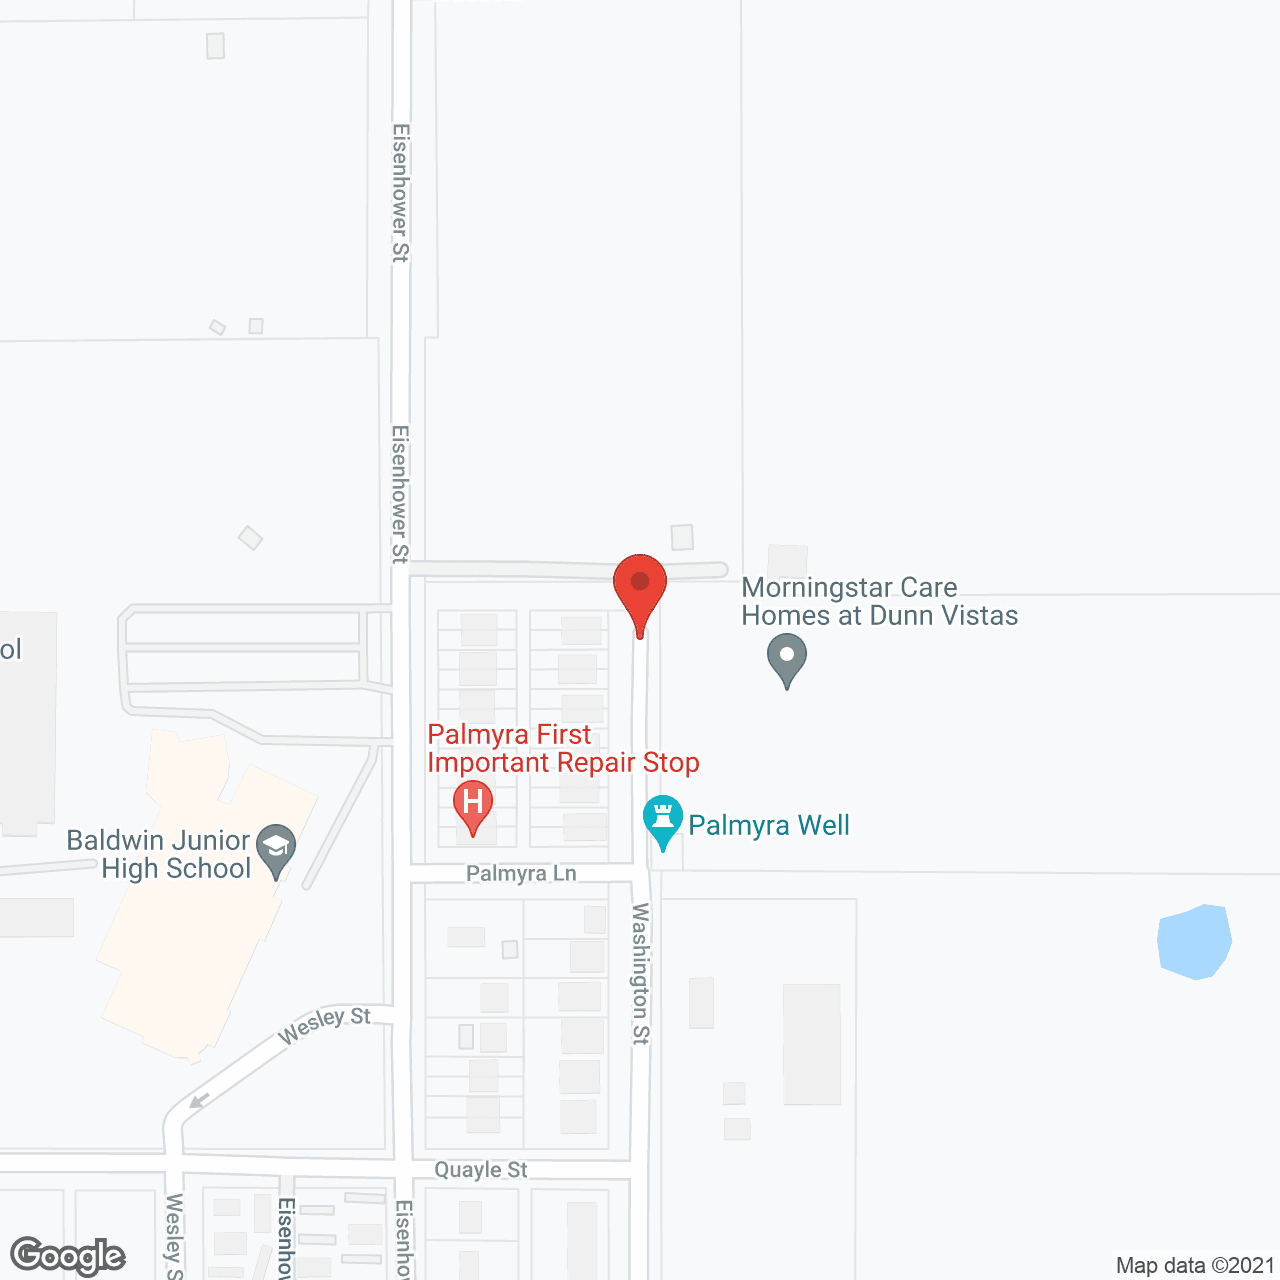 Dunns Vista in google map